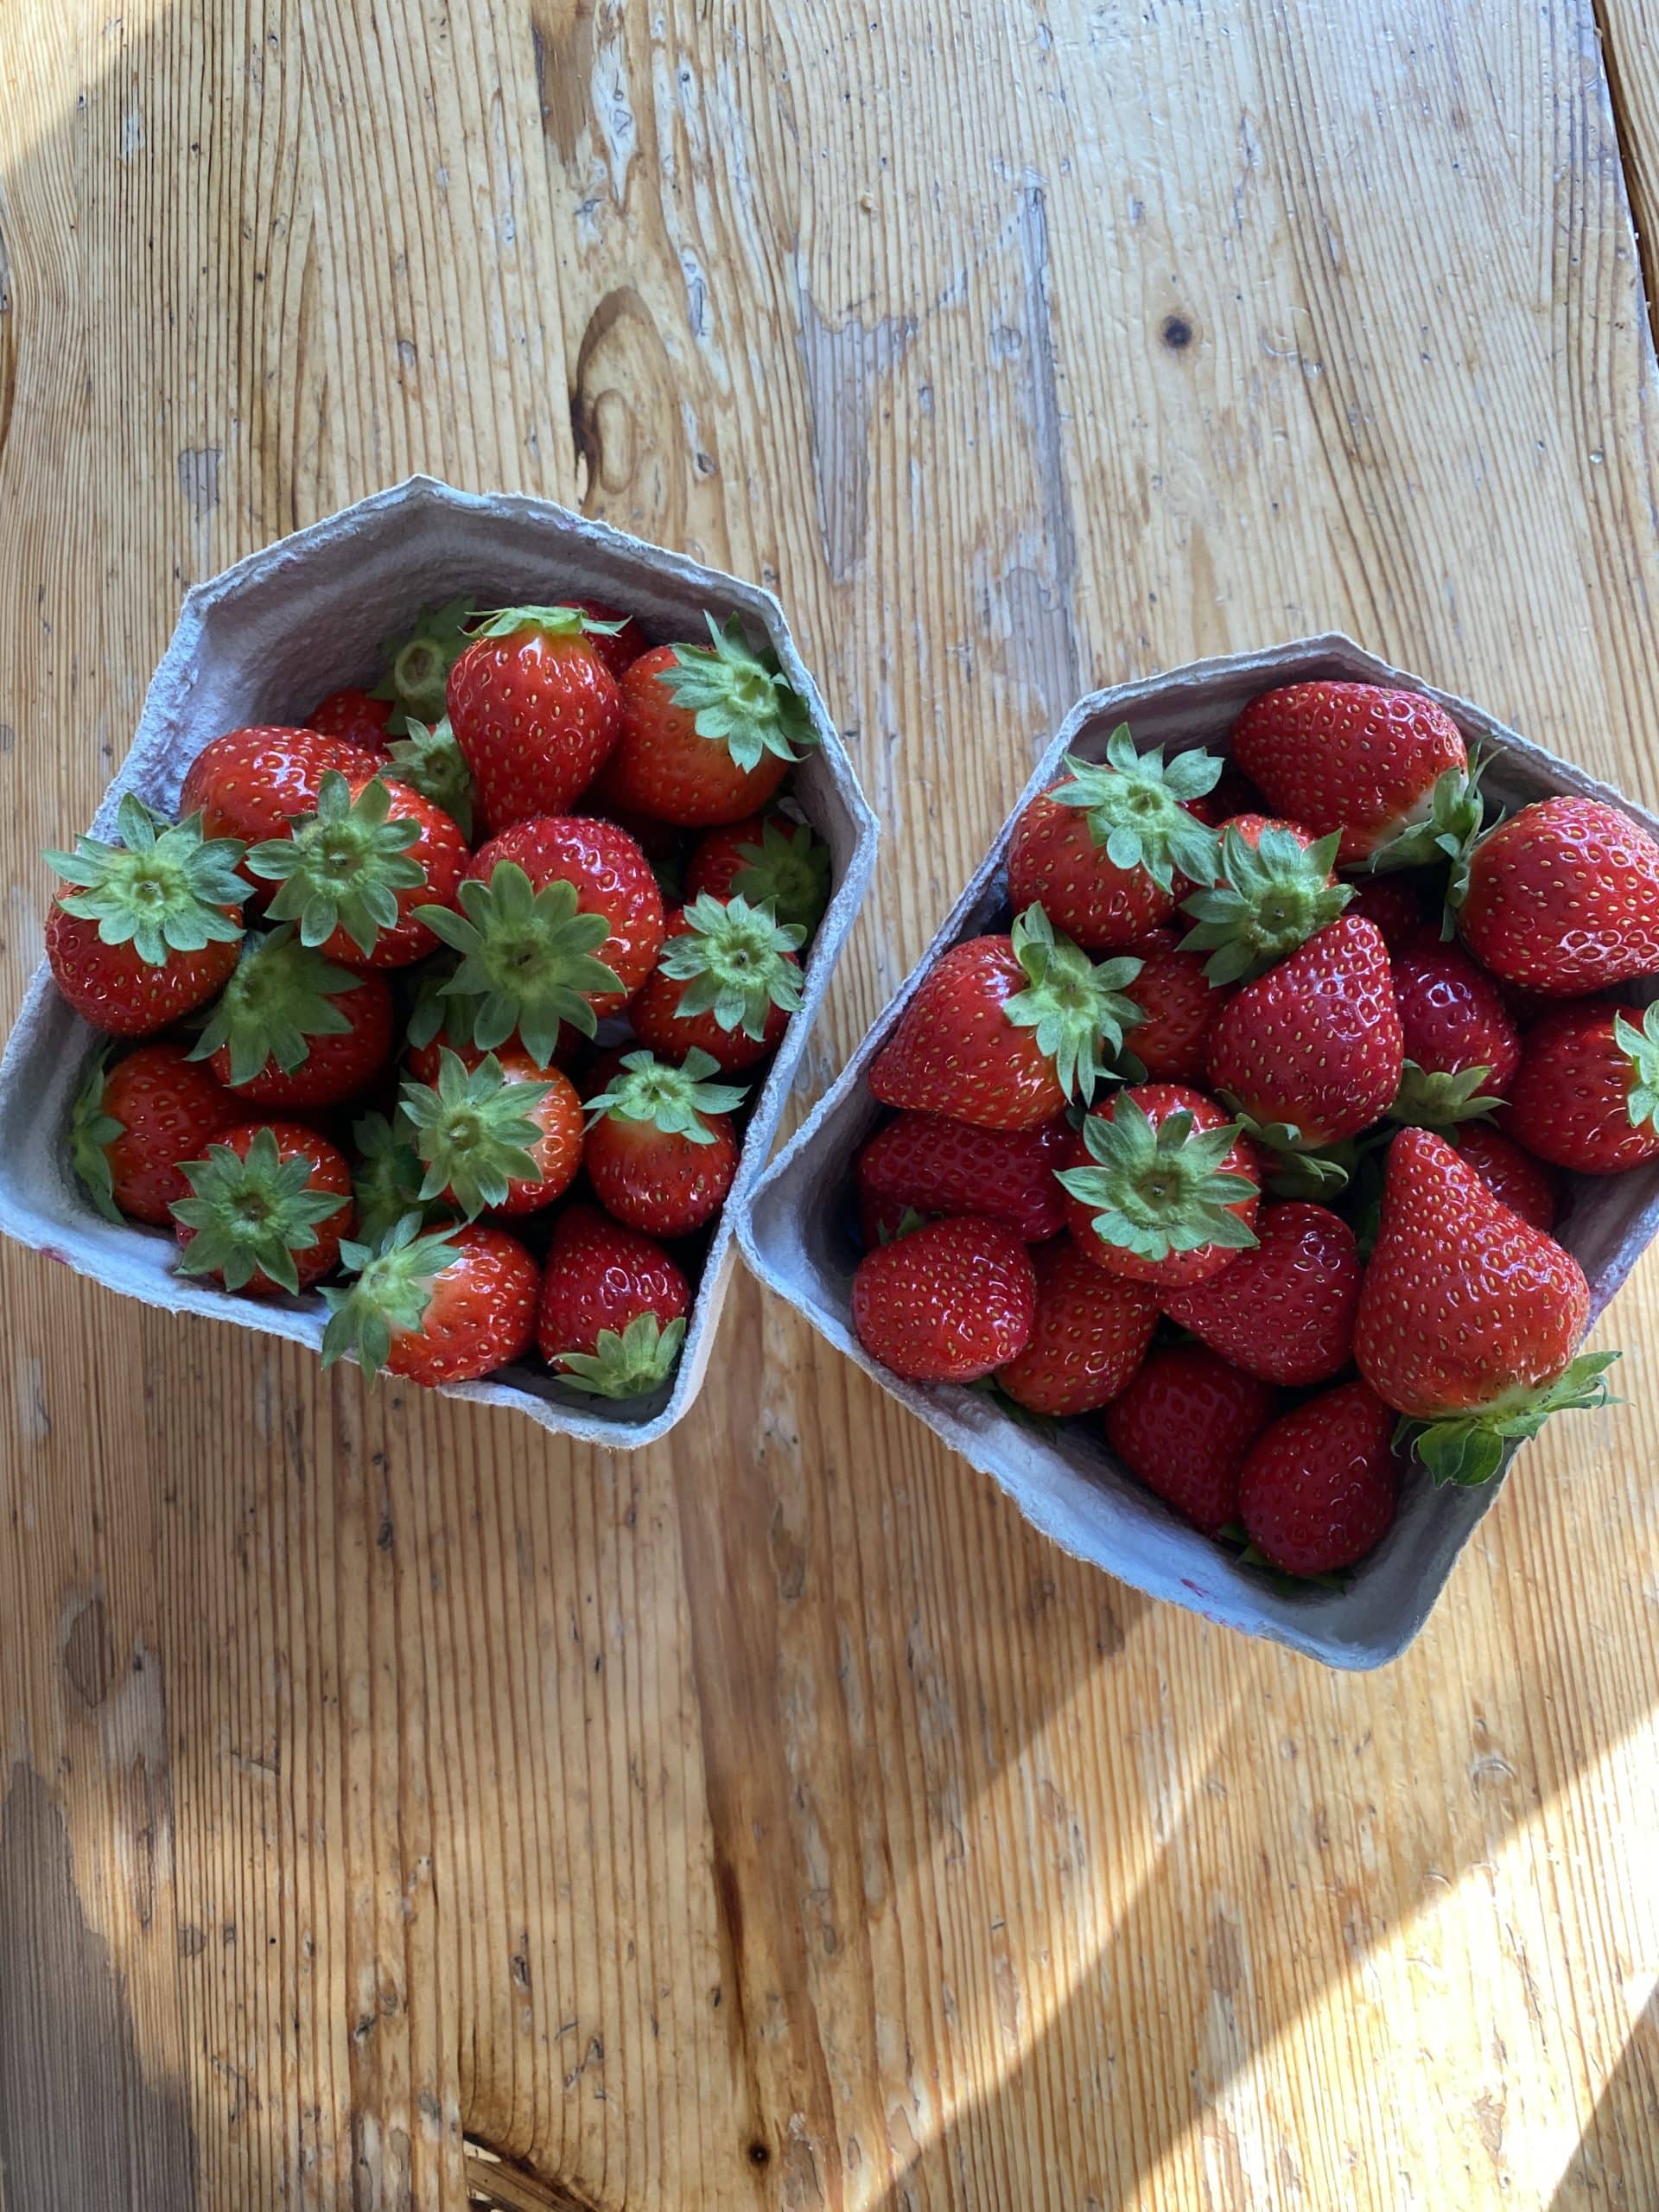 3. Wir essen Erdbeeren, es sind die letzten Früchte der Saison.